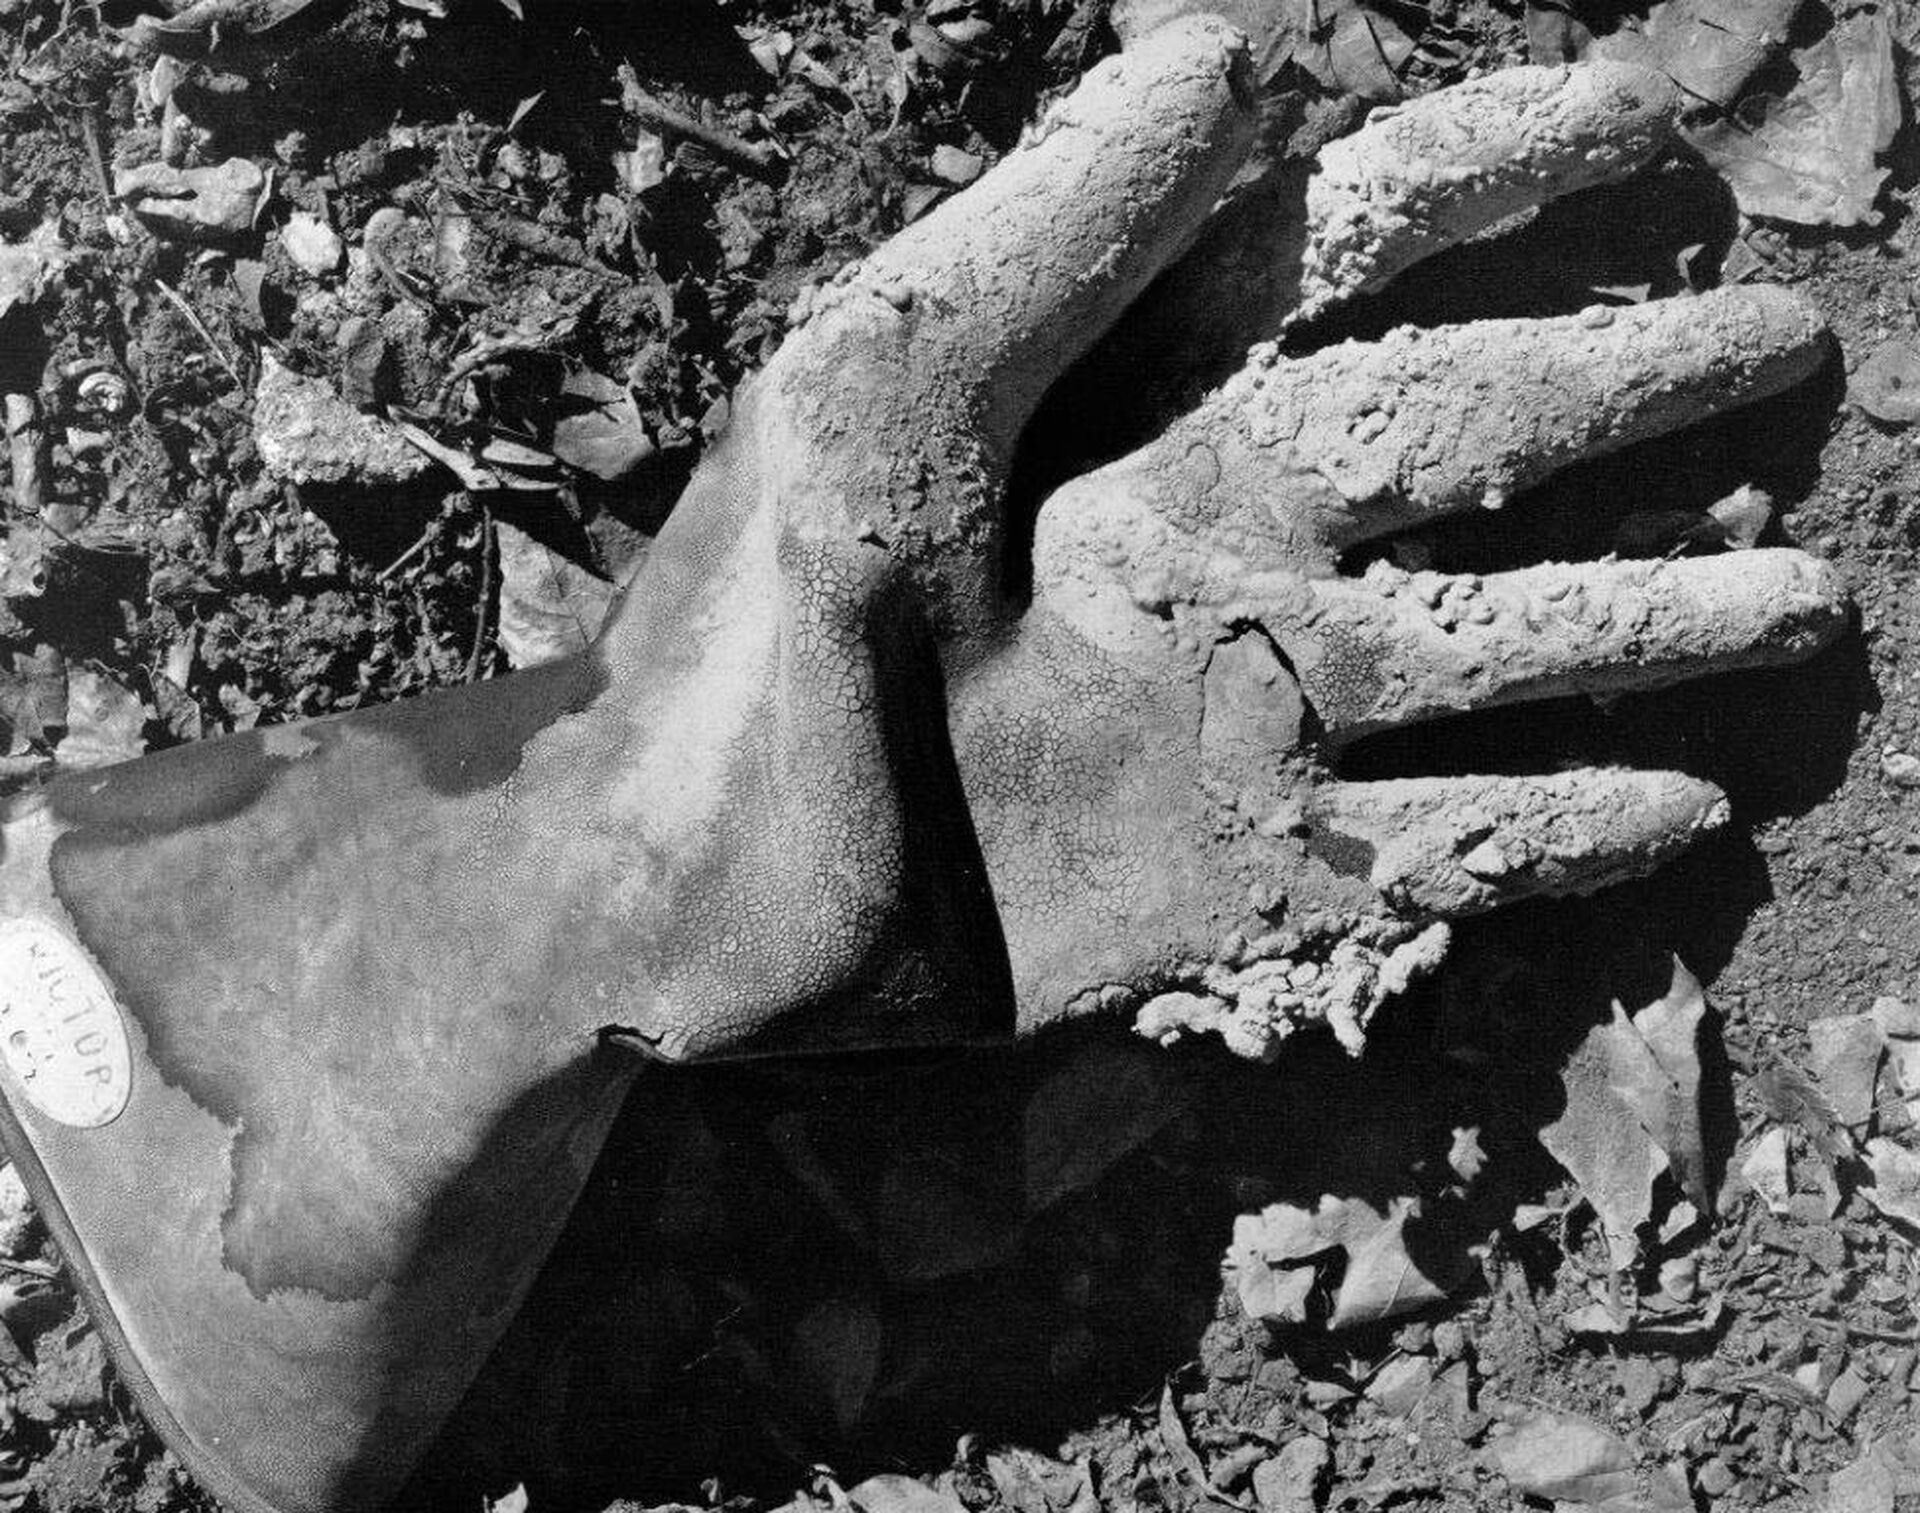 Edward Weston, Cement Workers Glove